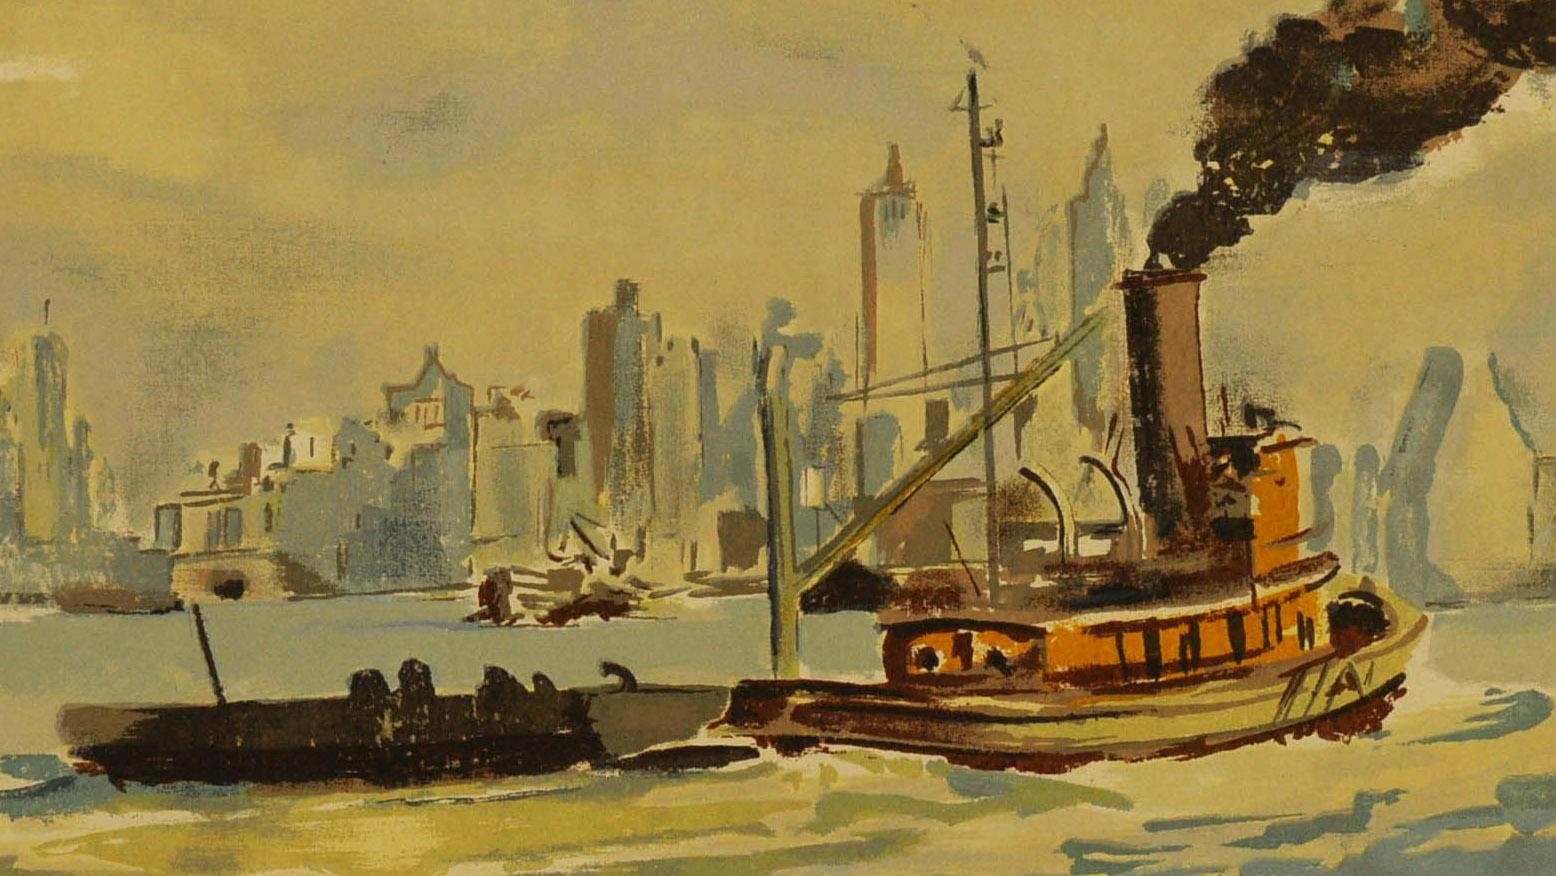 Remorqueur dans le port de New York
Sérigraphie, c. 1942
Signé dans l'écran en bas à droite (voir photo)
Condit : Excellent
Taille de l'image : 16 x 20 pouces
Publié par Living American Art, Inc. à New York (actif en 1942-43) : son cachet au